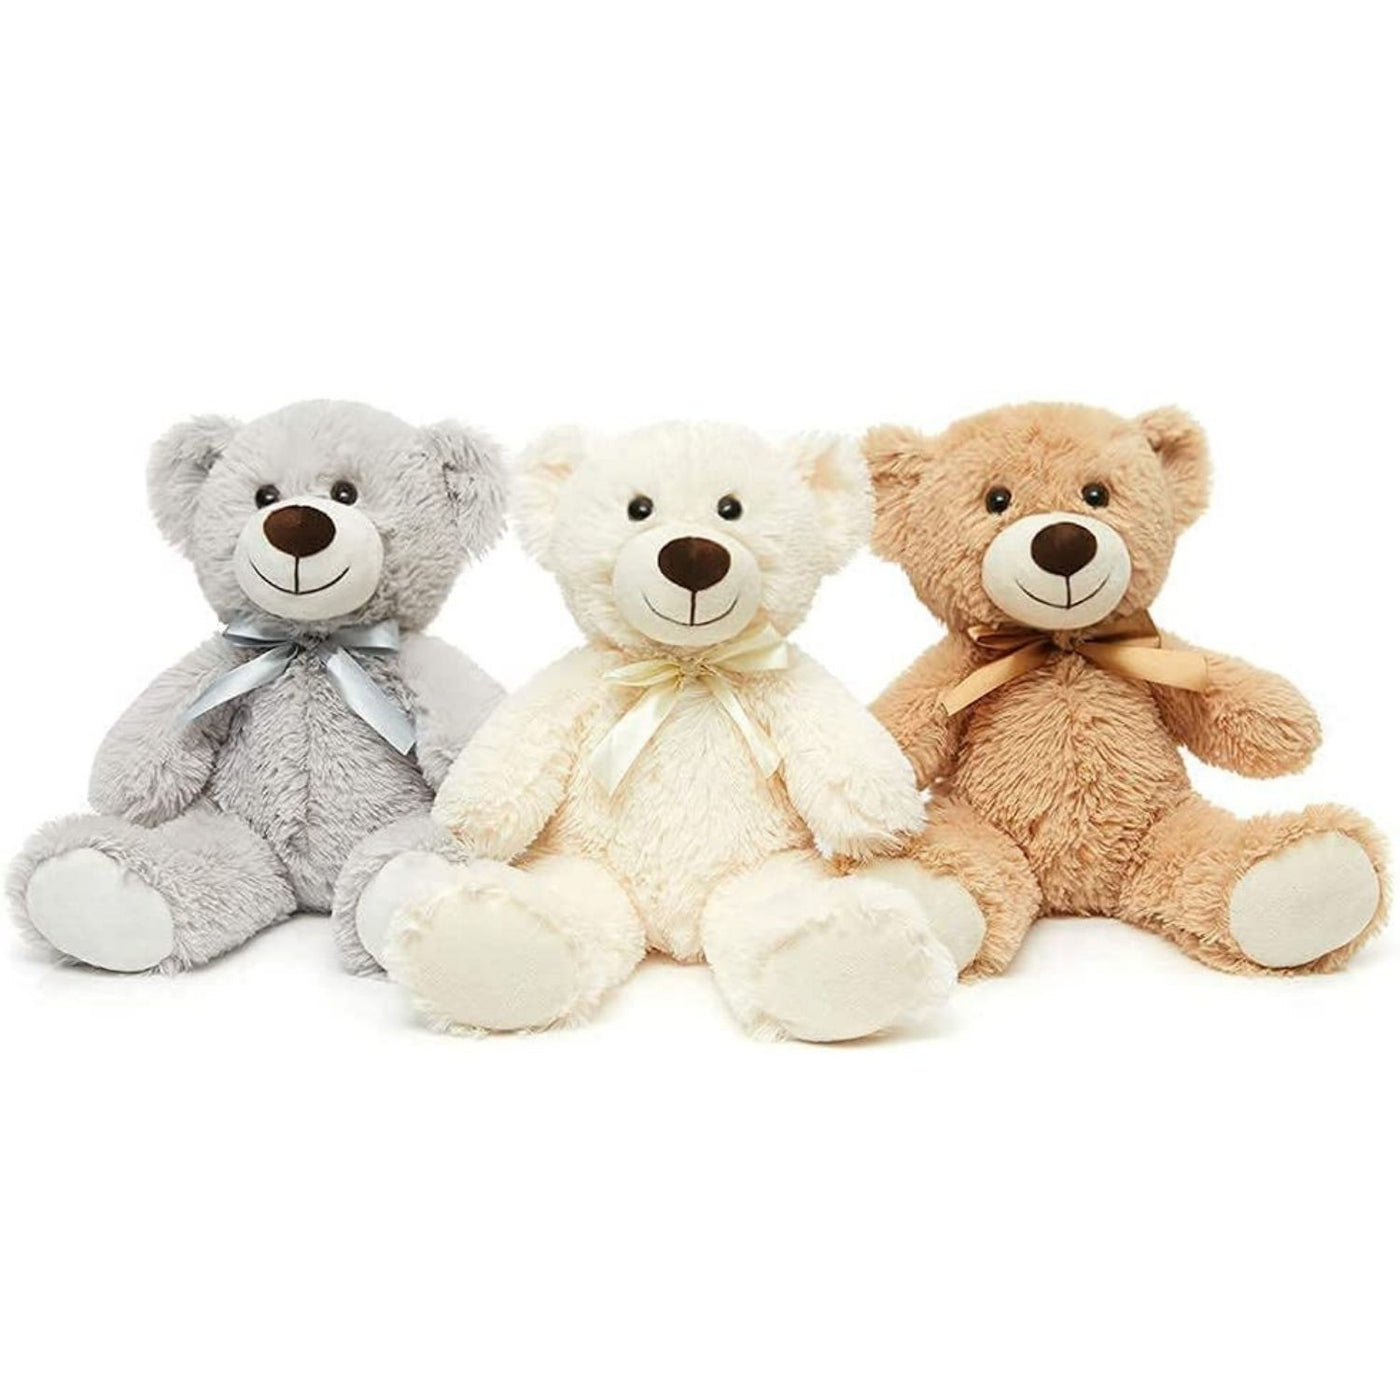 Ensemble de 3 ours en peluche, blanc/gris/marron clair, 13,8 pouces